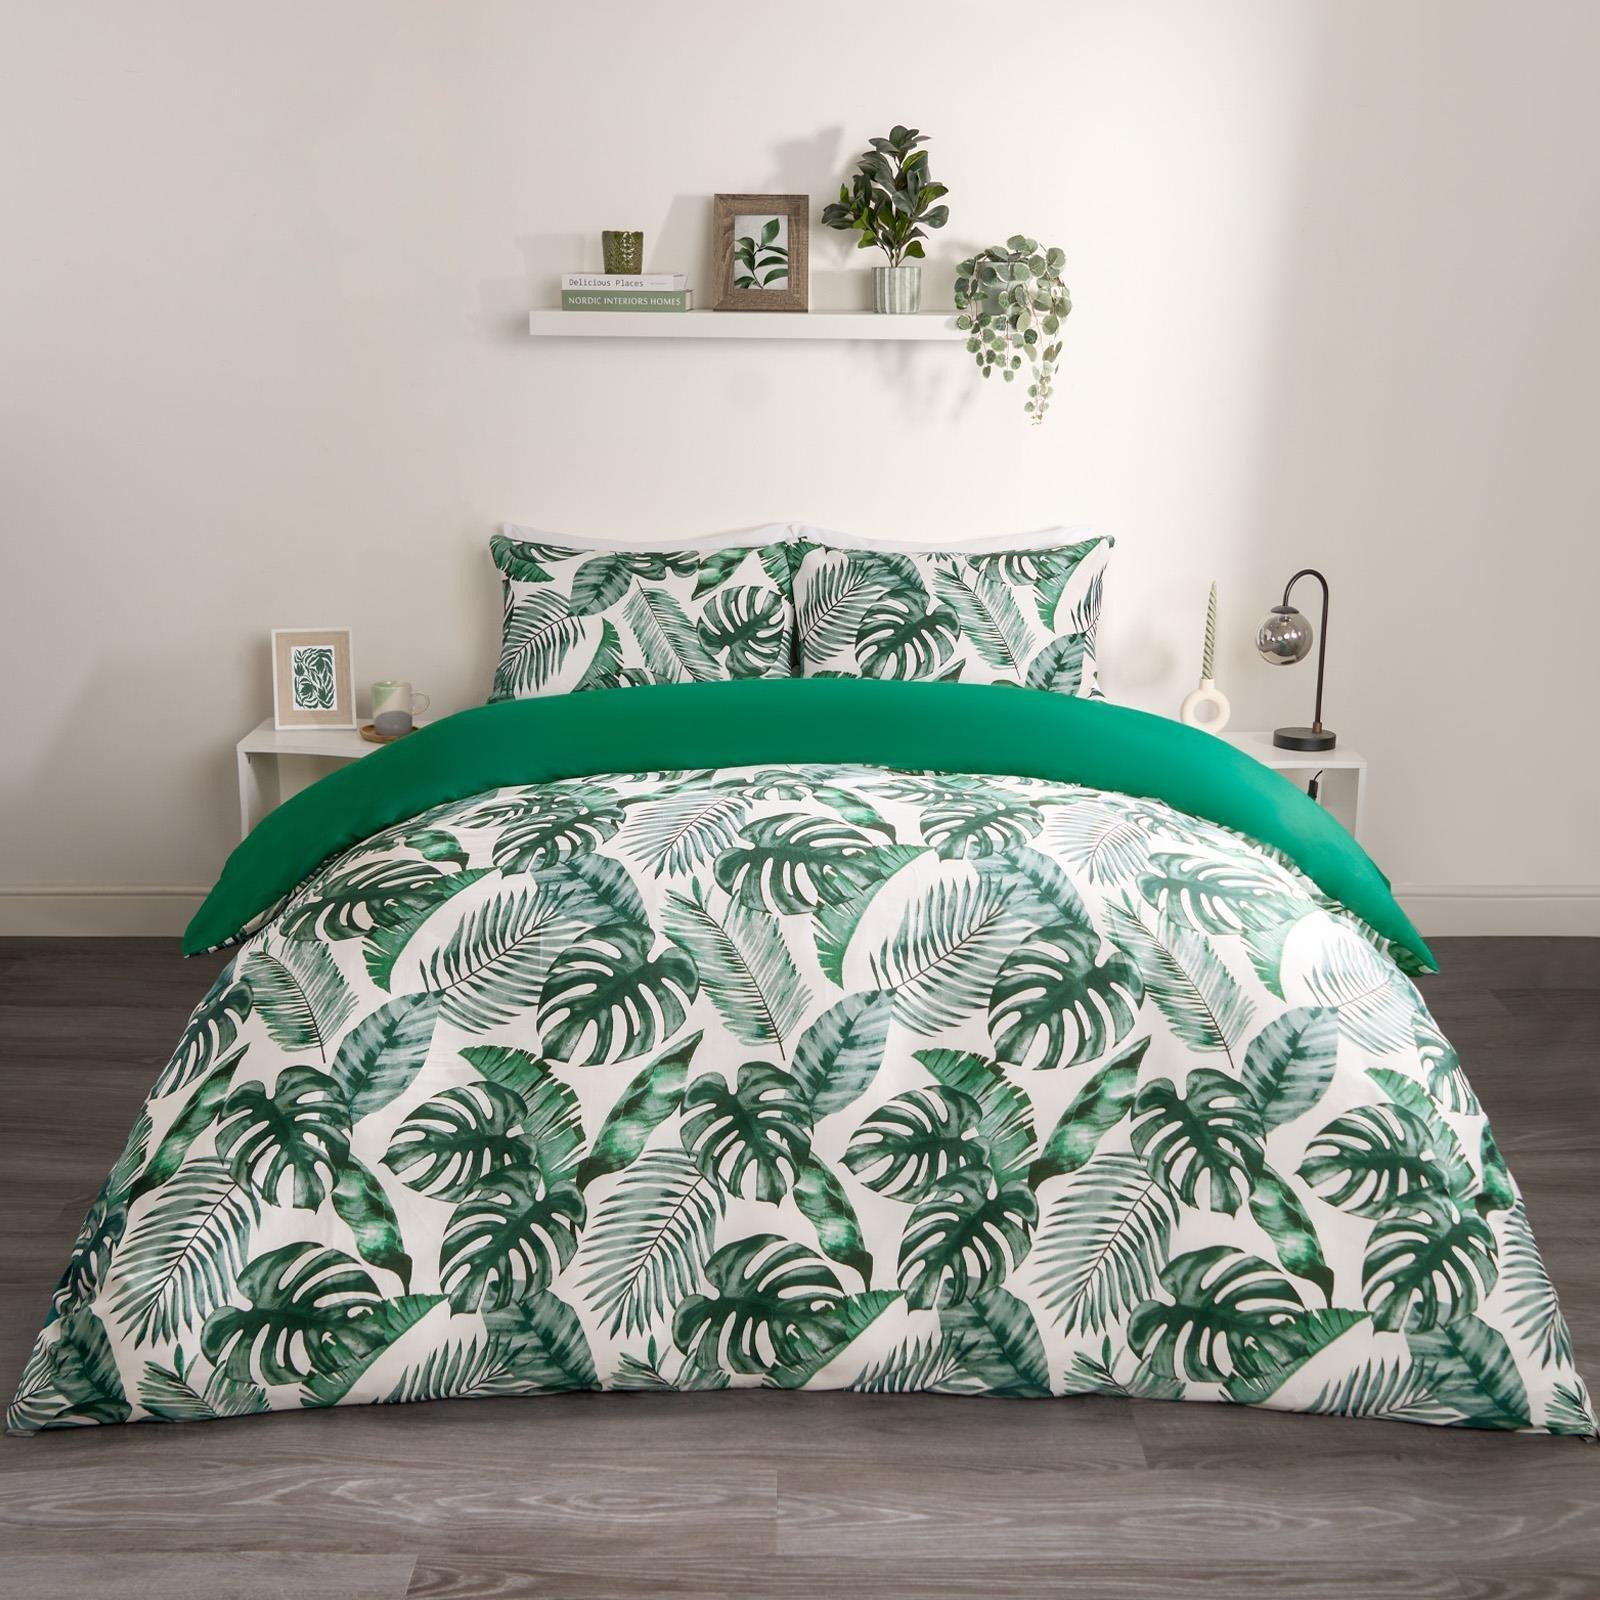 Tropical Leaf Duvet Cover Reversible Bedding Set - image 1